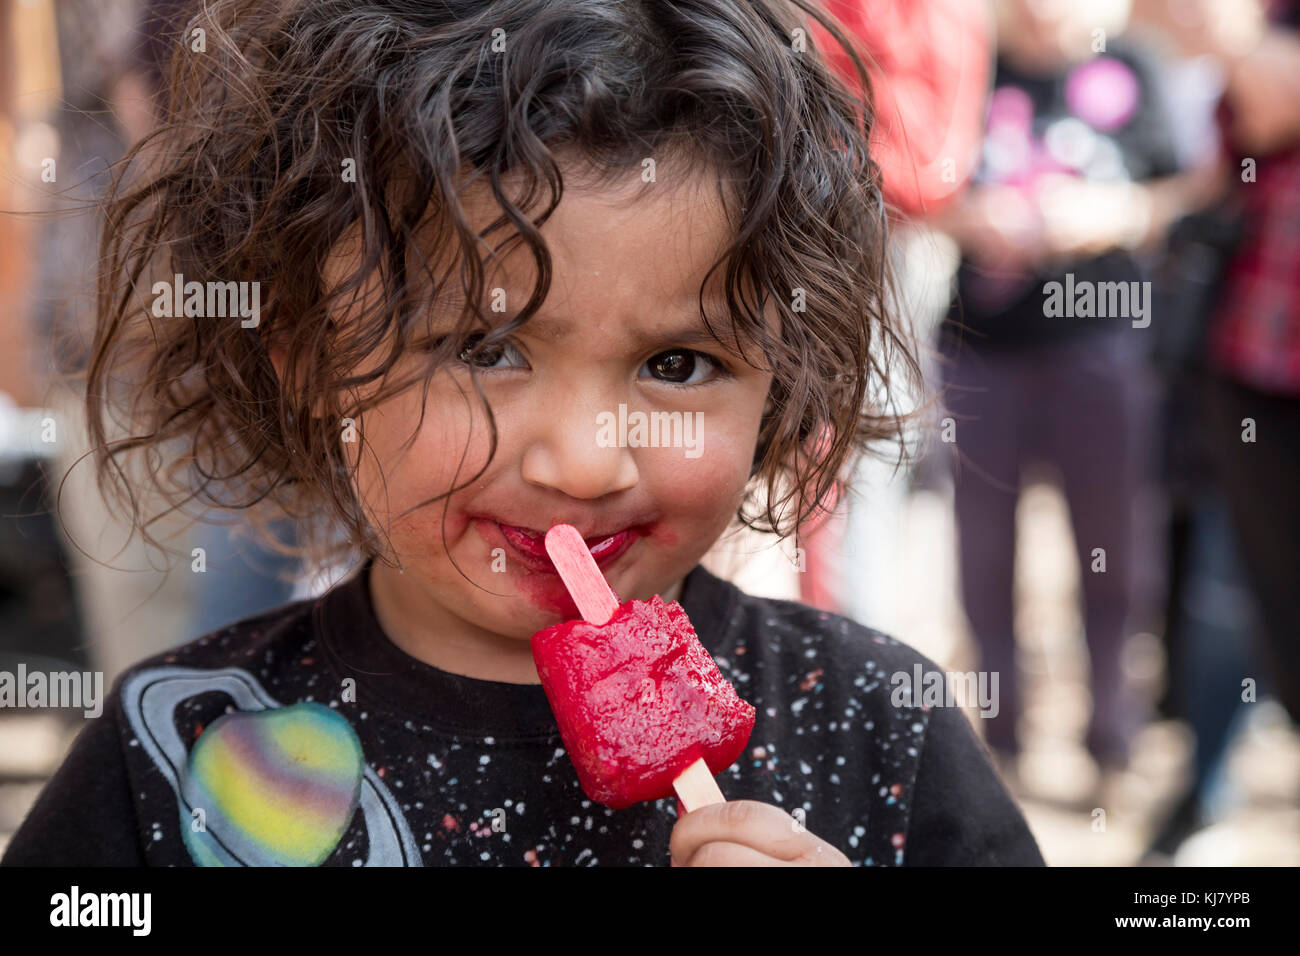 Nogales Sonora, Mexiko - ein Kind isst eine rote Popsicle. Stockfoto